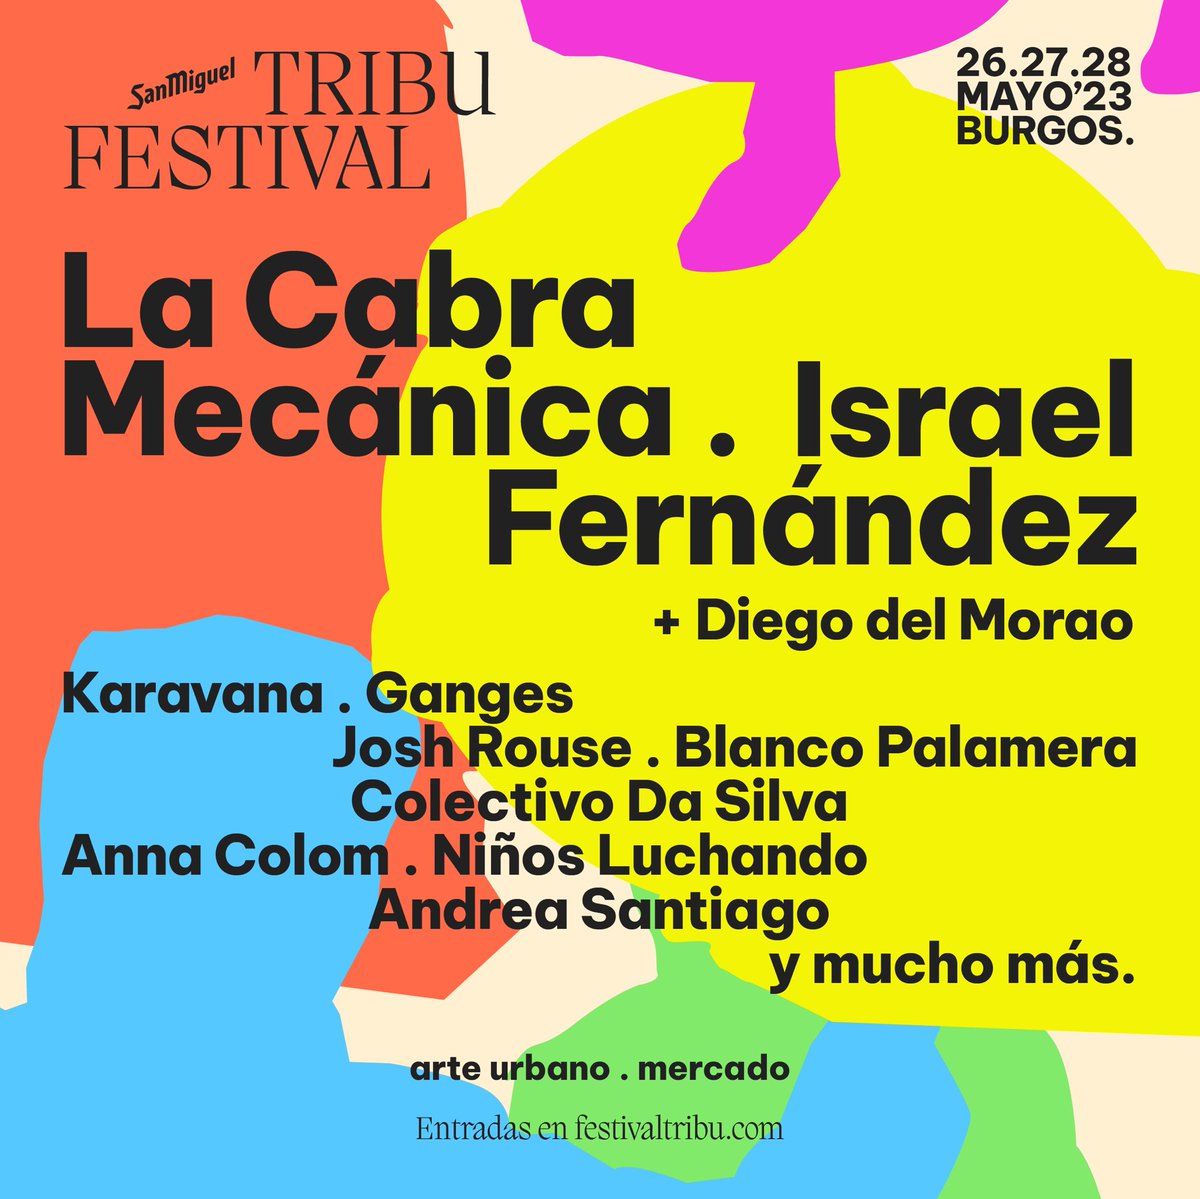 🤩 ¡Salimos! 🤩 Por fin os podemos presentar el cartel del #SanMiguelTribuFestival ❤️ Estas son las actividades que tendremos en La Parrala, próximamente anunciamos más nombres y cositas que haremos por la ciudad 🤭 🎟️ entradas a la venta en festivaltribu.com